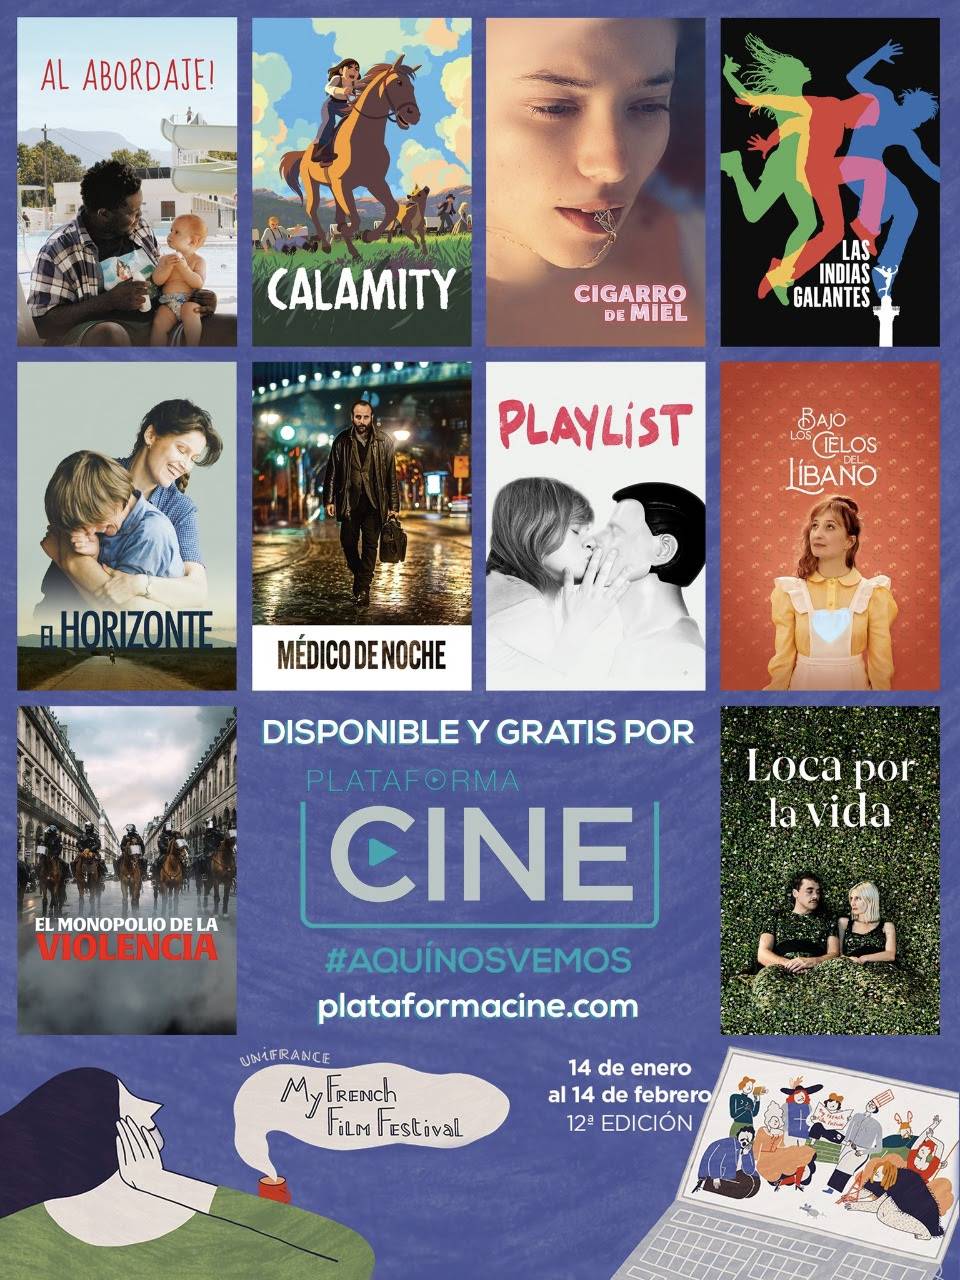 My French Film Festival en Plataforma Cine